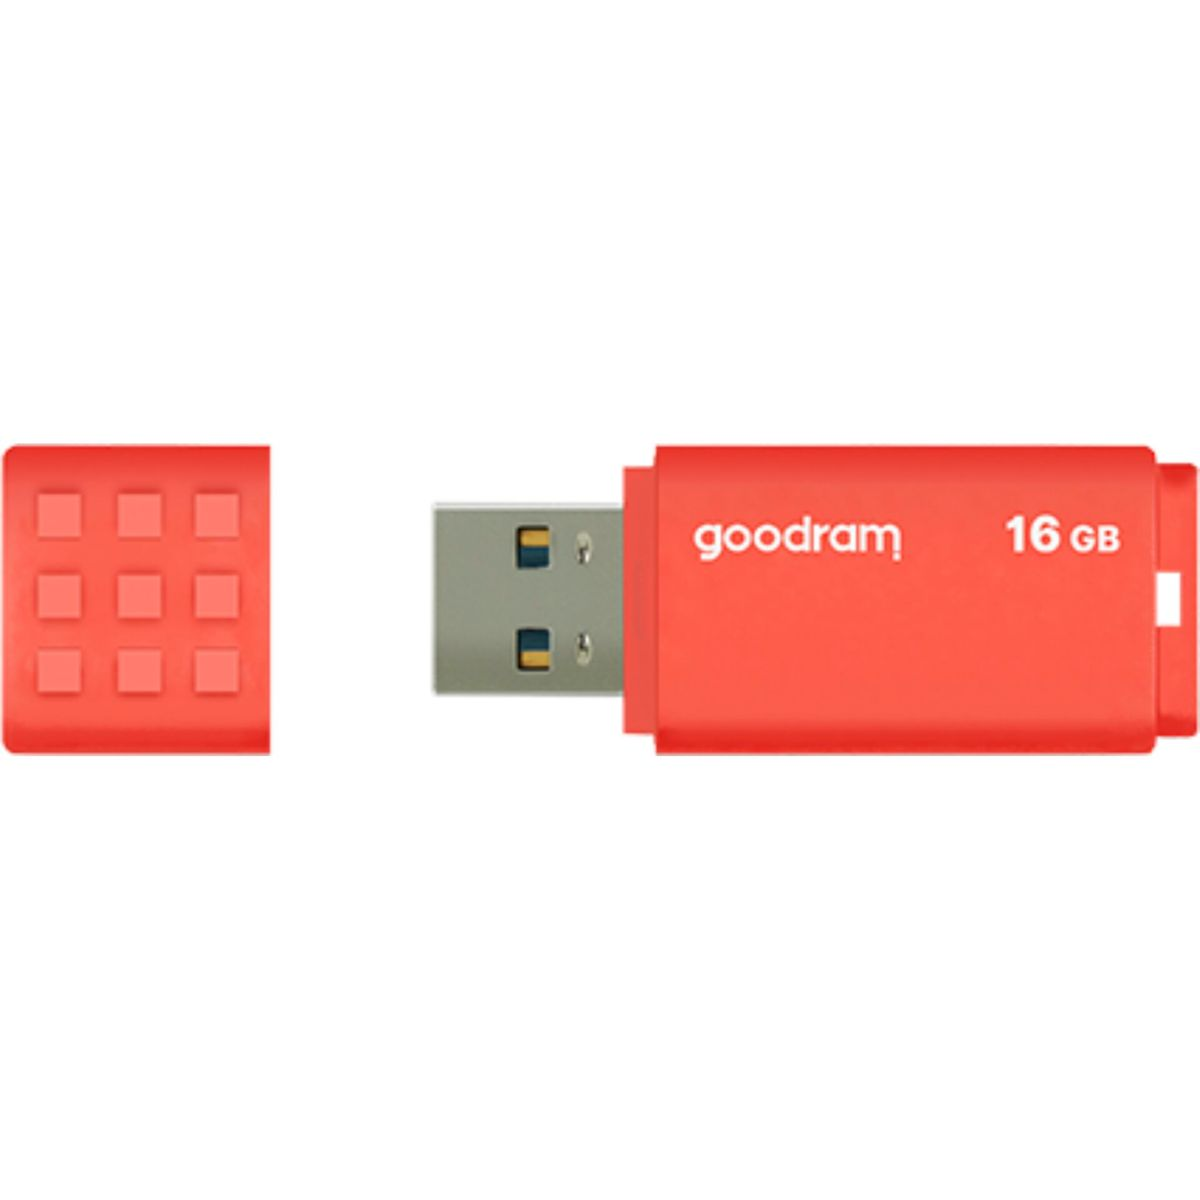 16GB GOODRAM USB USB (orange, Stick Orange GB) UME3 16 3.0